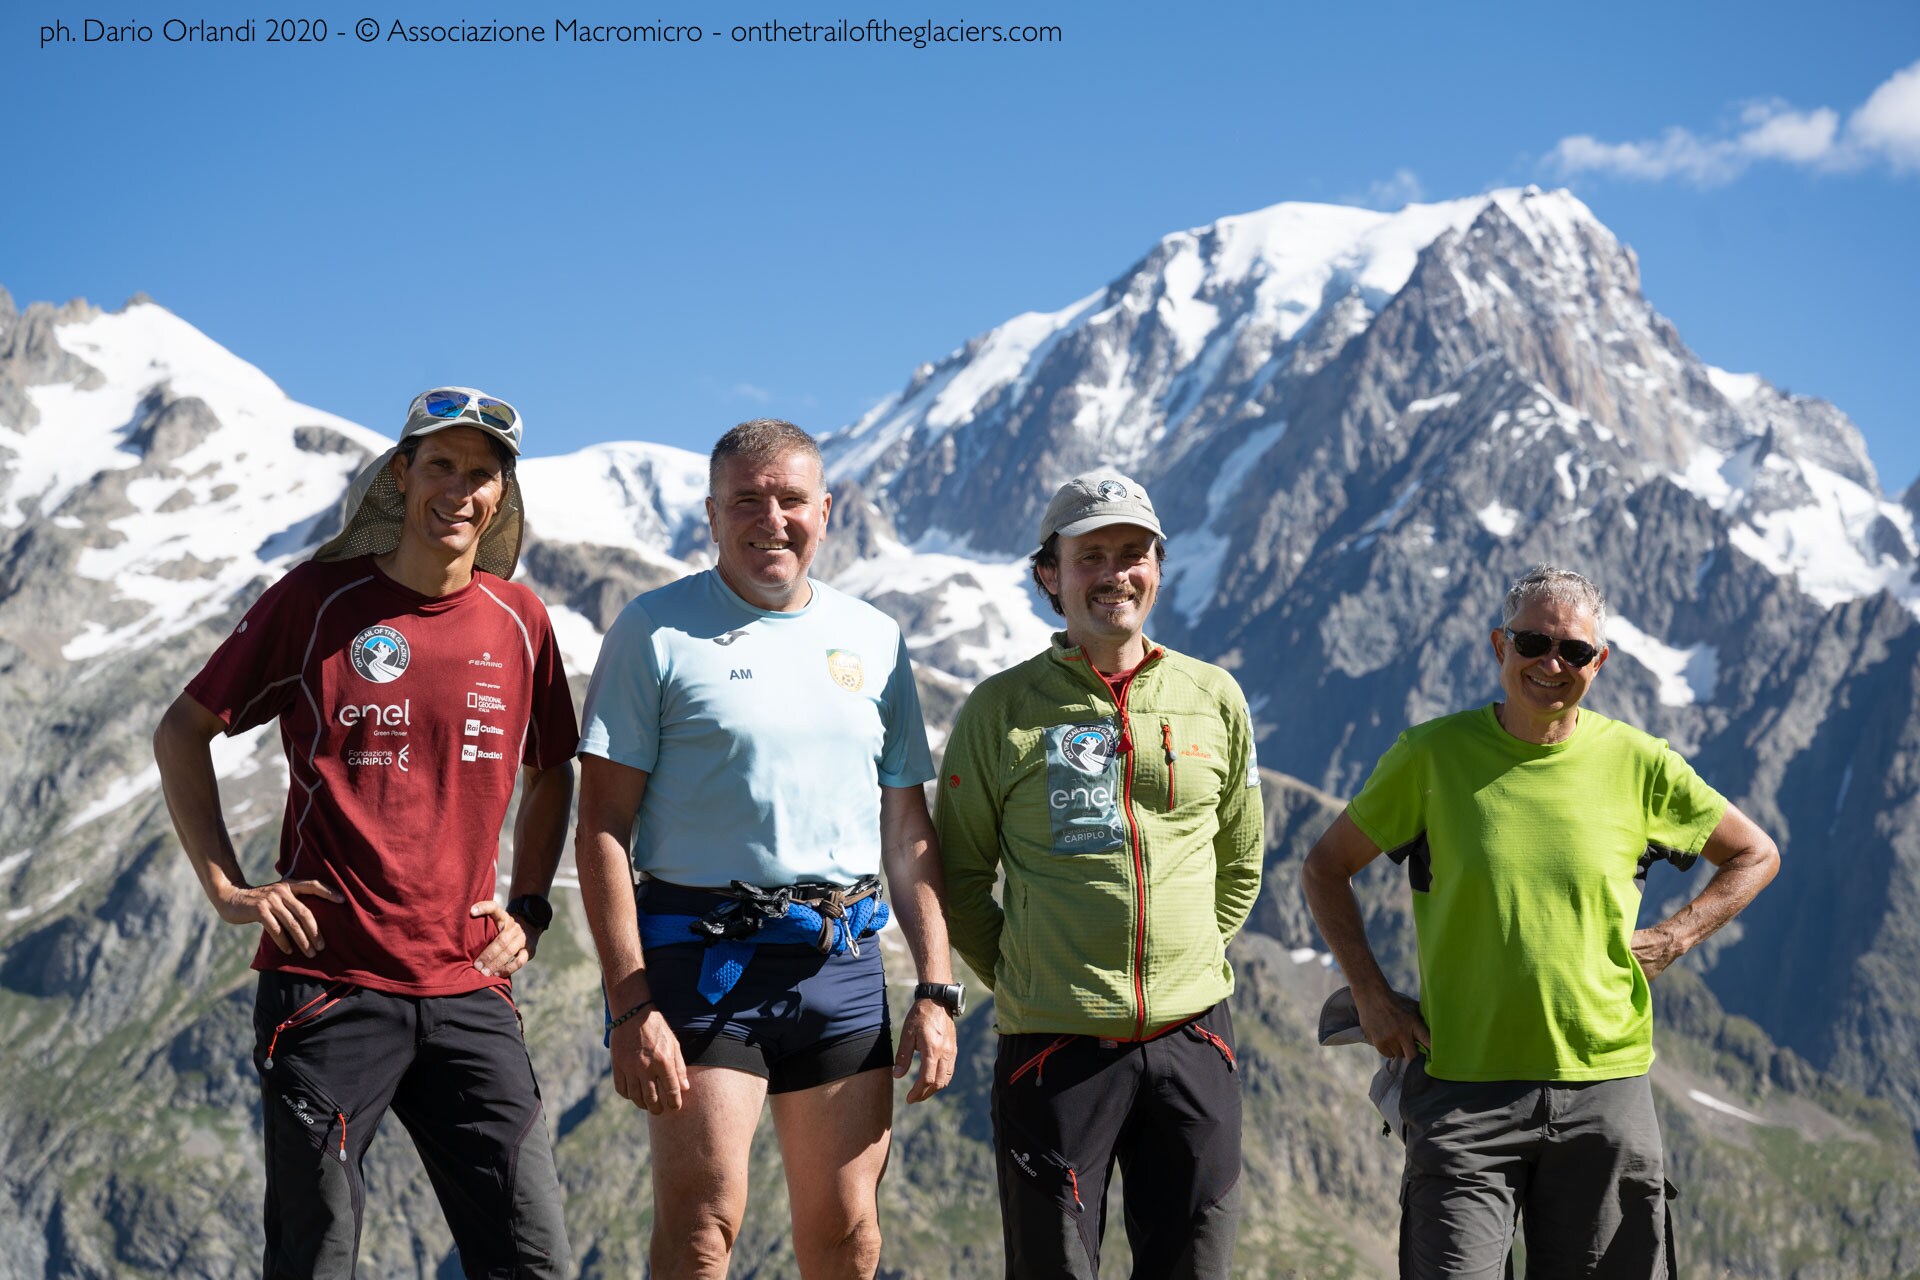 Courmayeur (Aosta). Spedizione "Sulle tracce dei ghiacciai - Alpi 2020". Fotografia di Dario Orlandi 2020 - © Associazione Macromicro - onthetrailoftheglaciers.com